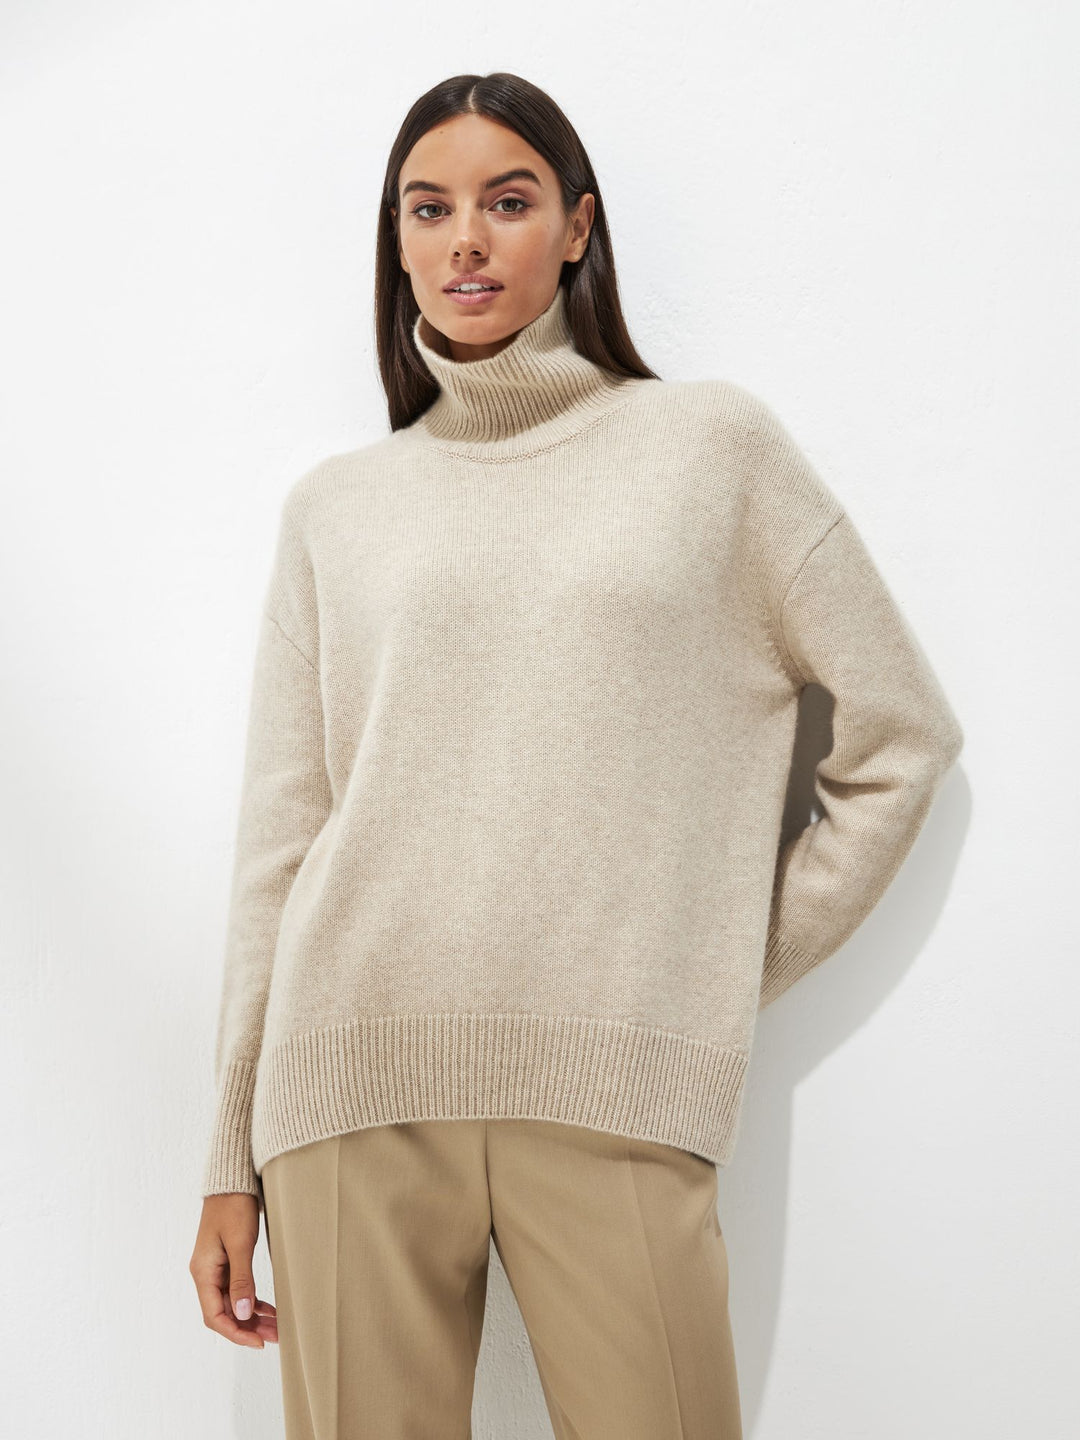  cashmere turtleneck sweater in beige